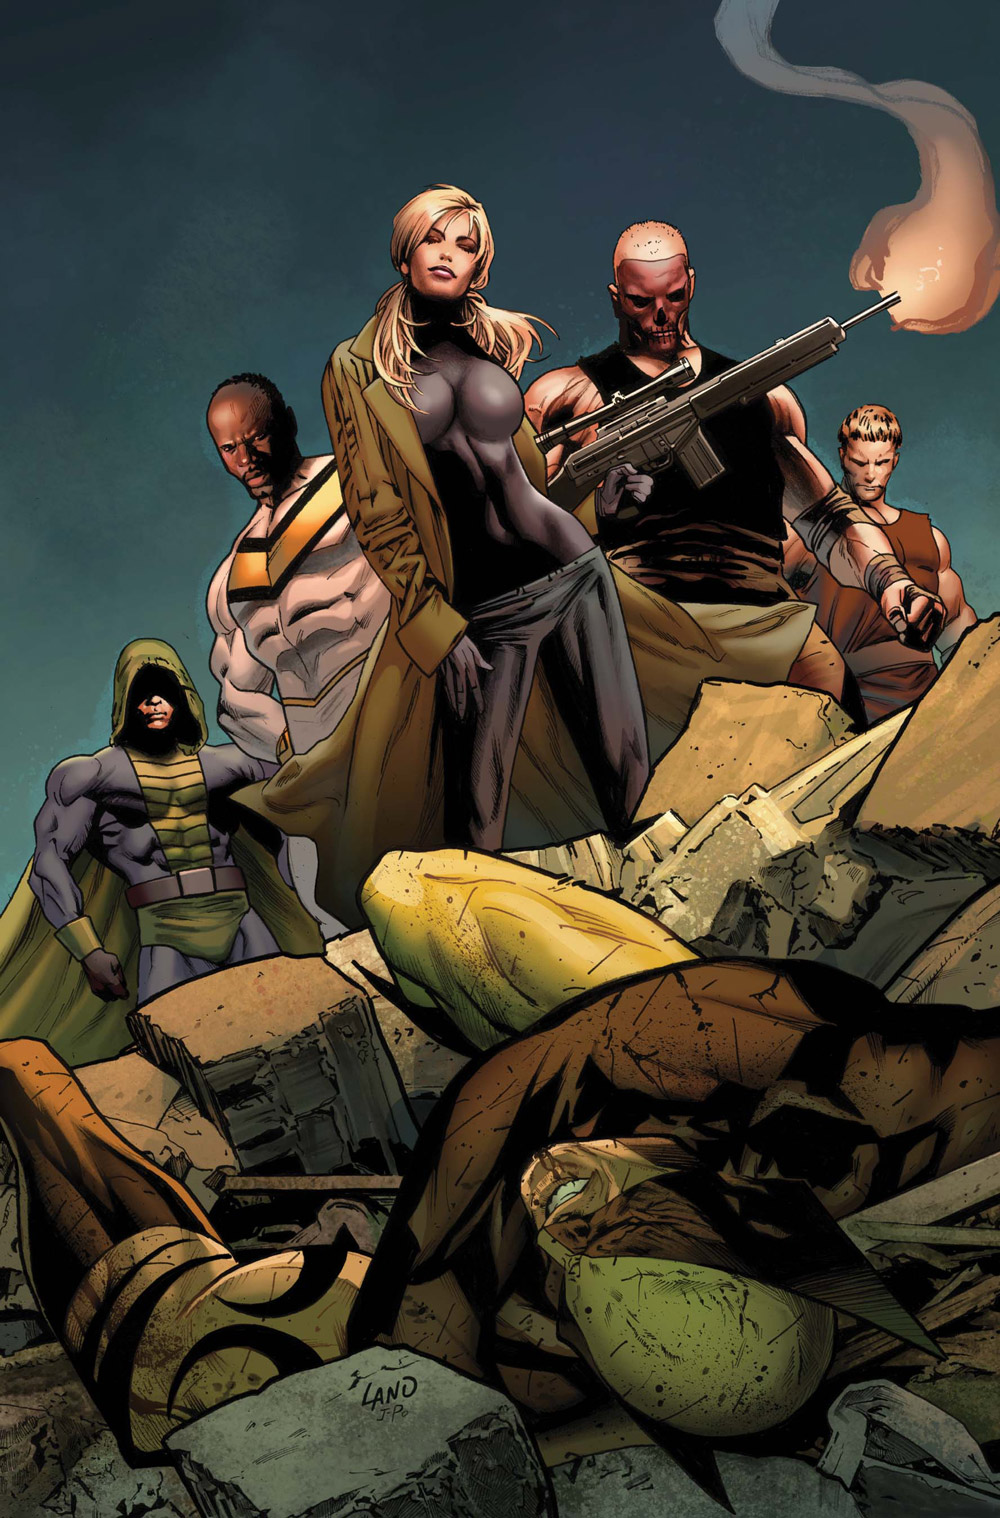 Dark Wolverine #79